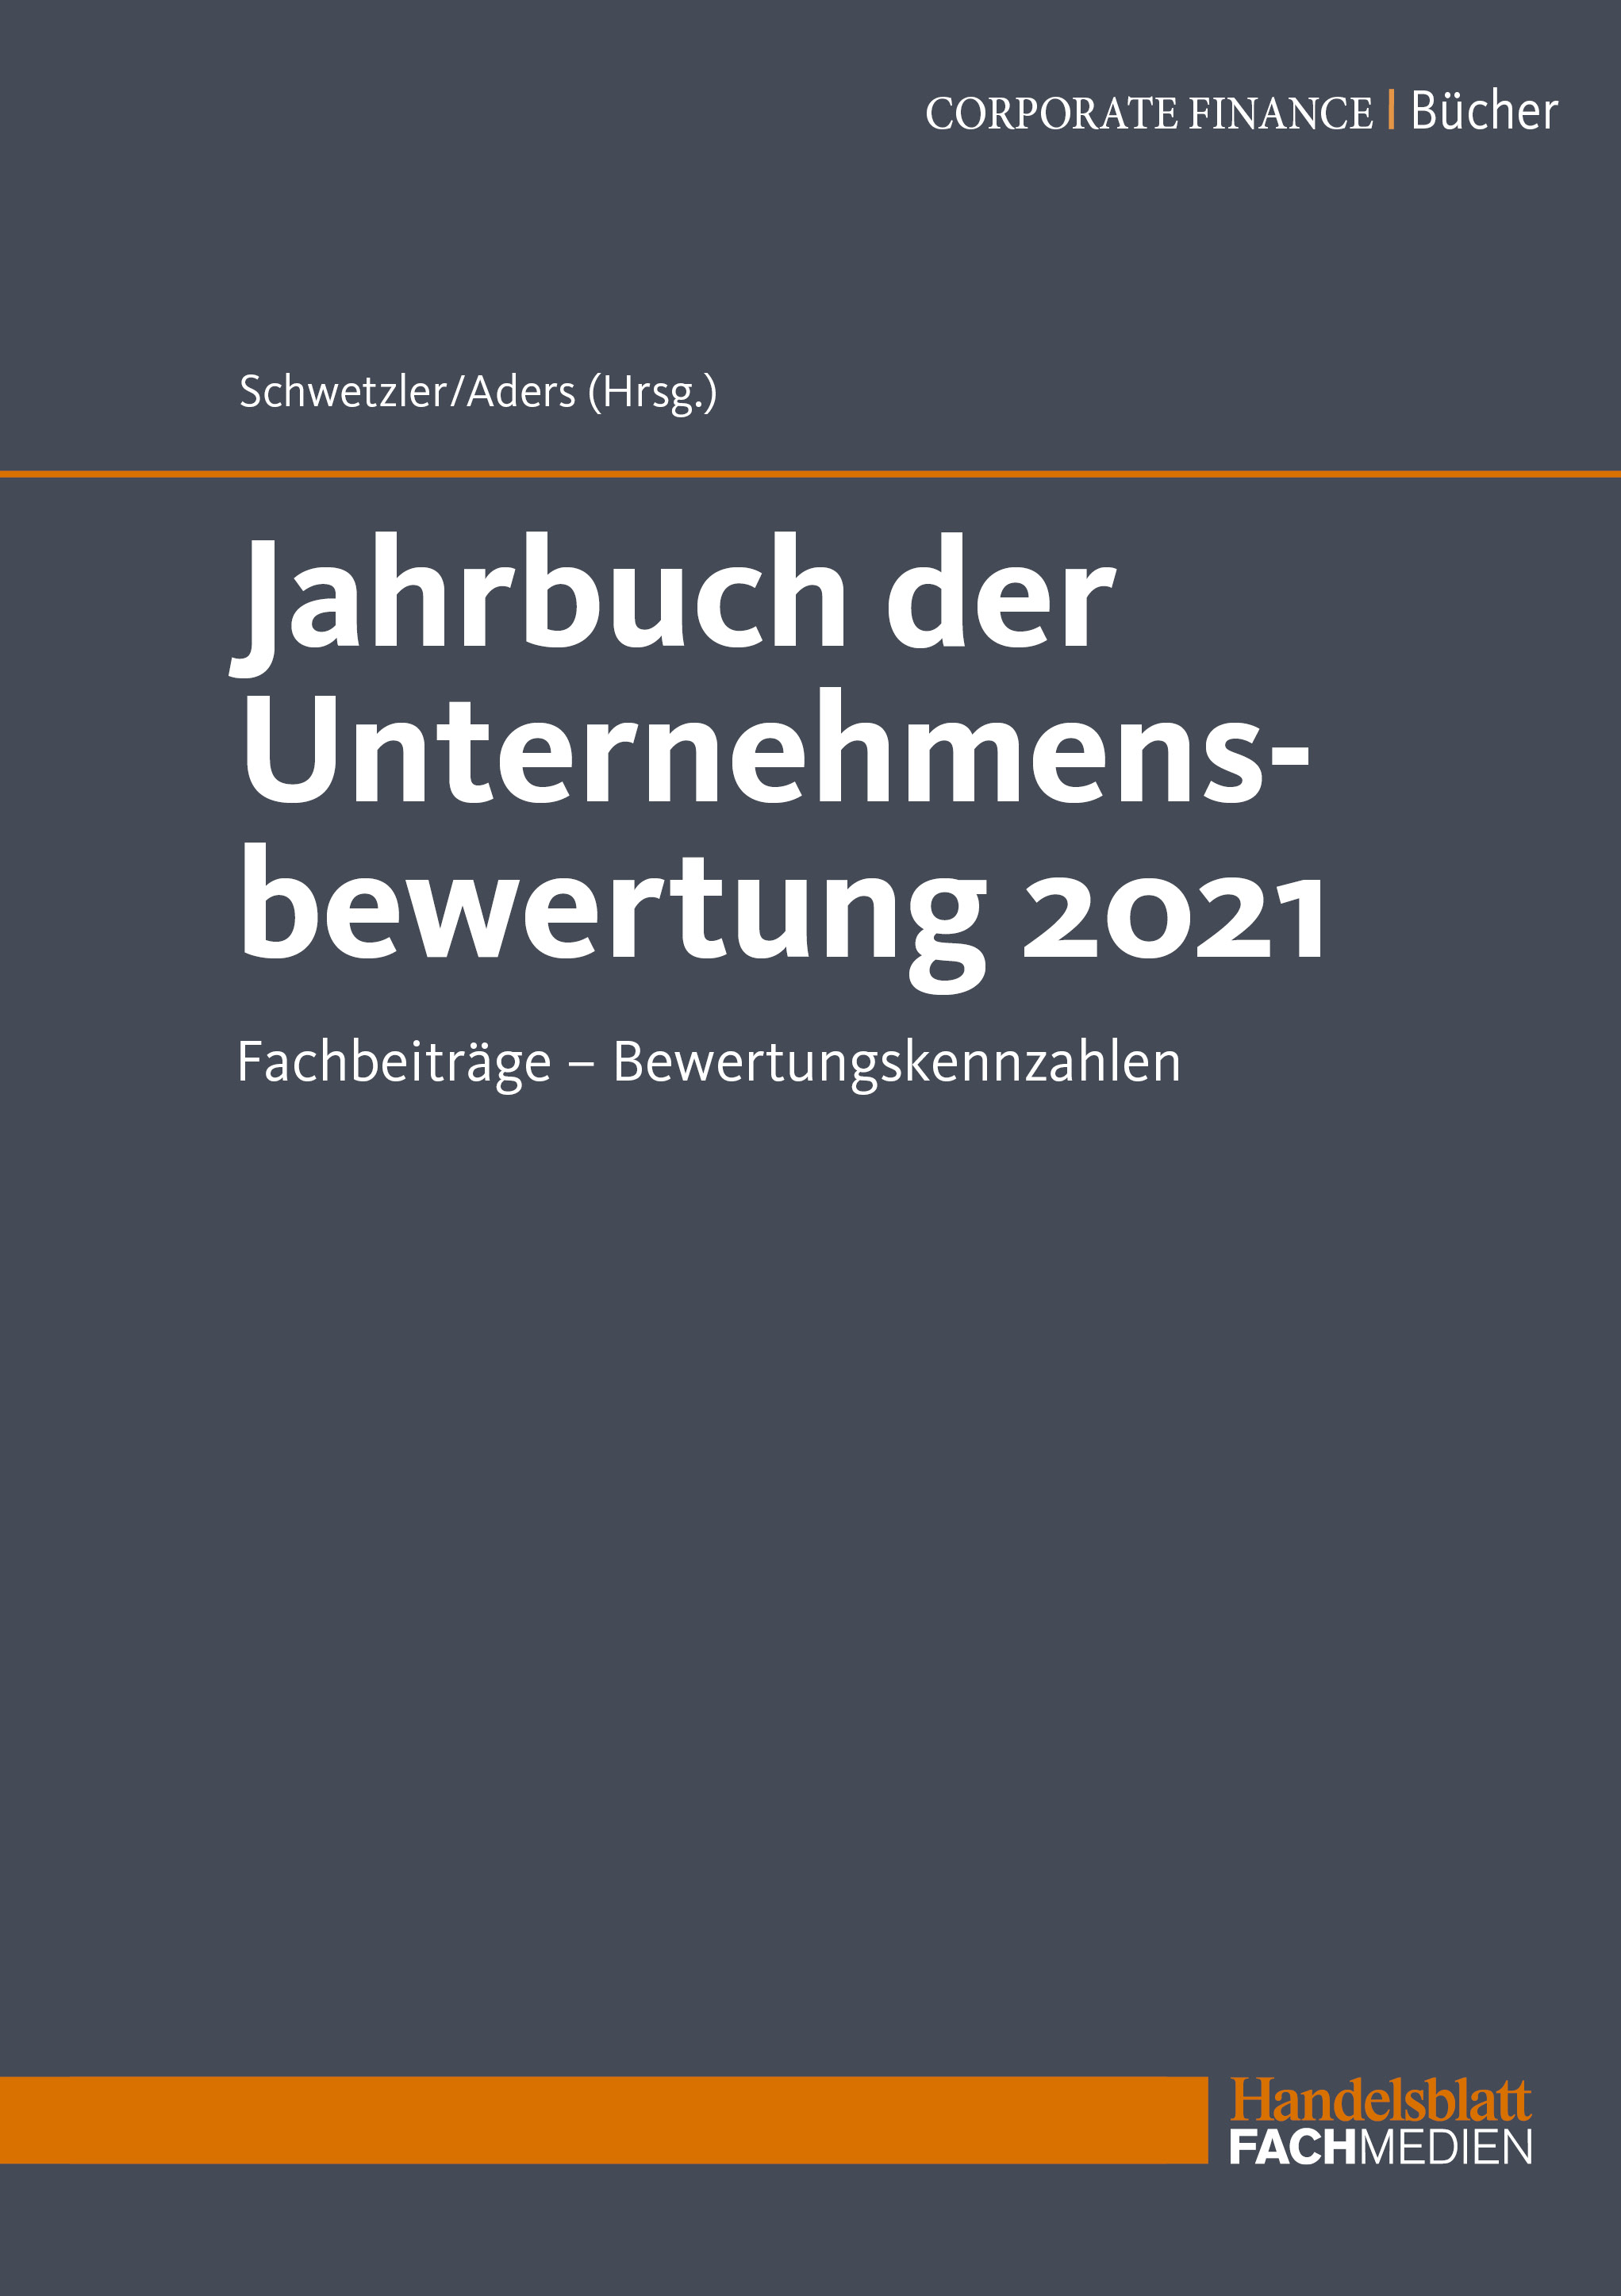 Jahrbuch der Unternehmensbewertung 2021 (PDF)